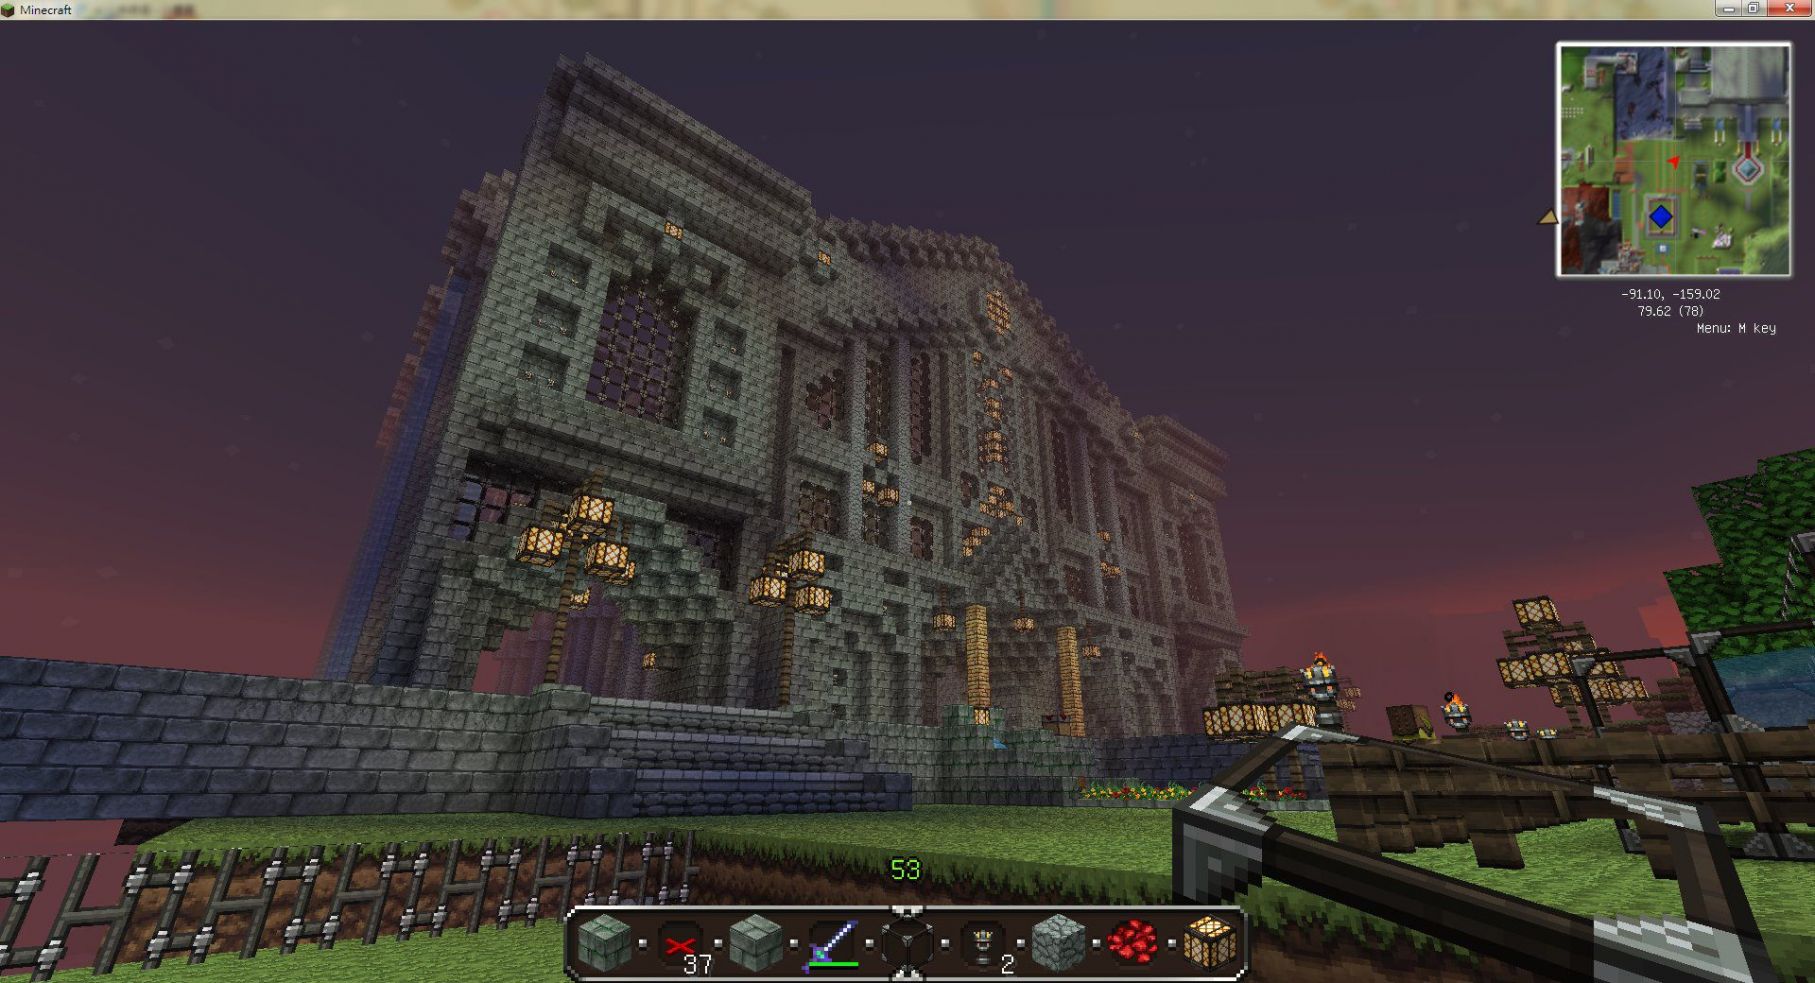 大型景觀 小弟的作品教堂鳳凰殿圖書館 Minecraft 我的世界 當個創世神 哈啦板 巴哈姆特